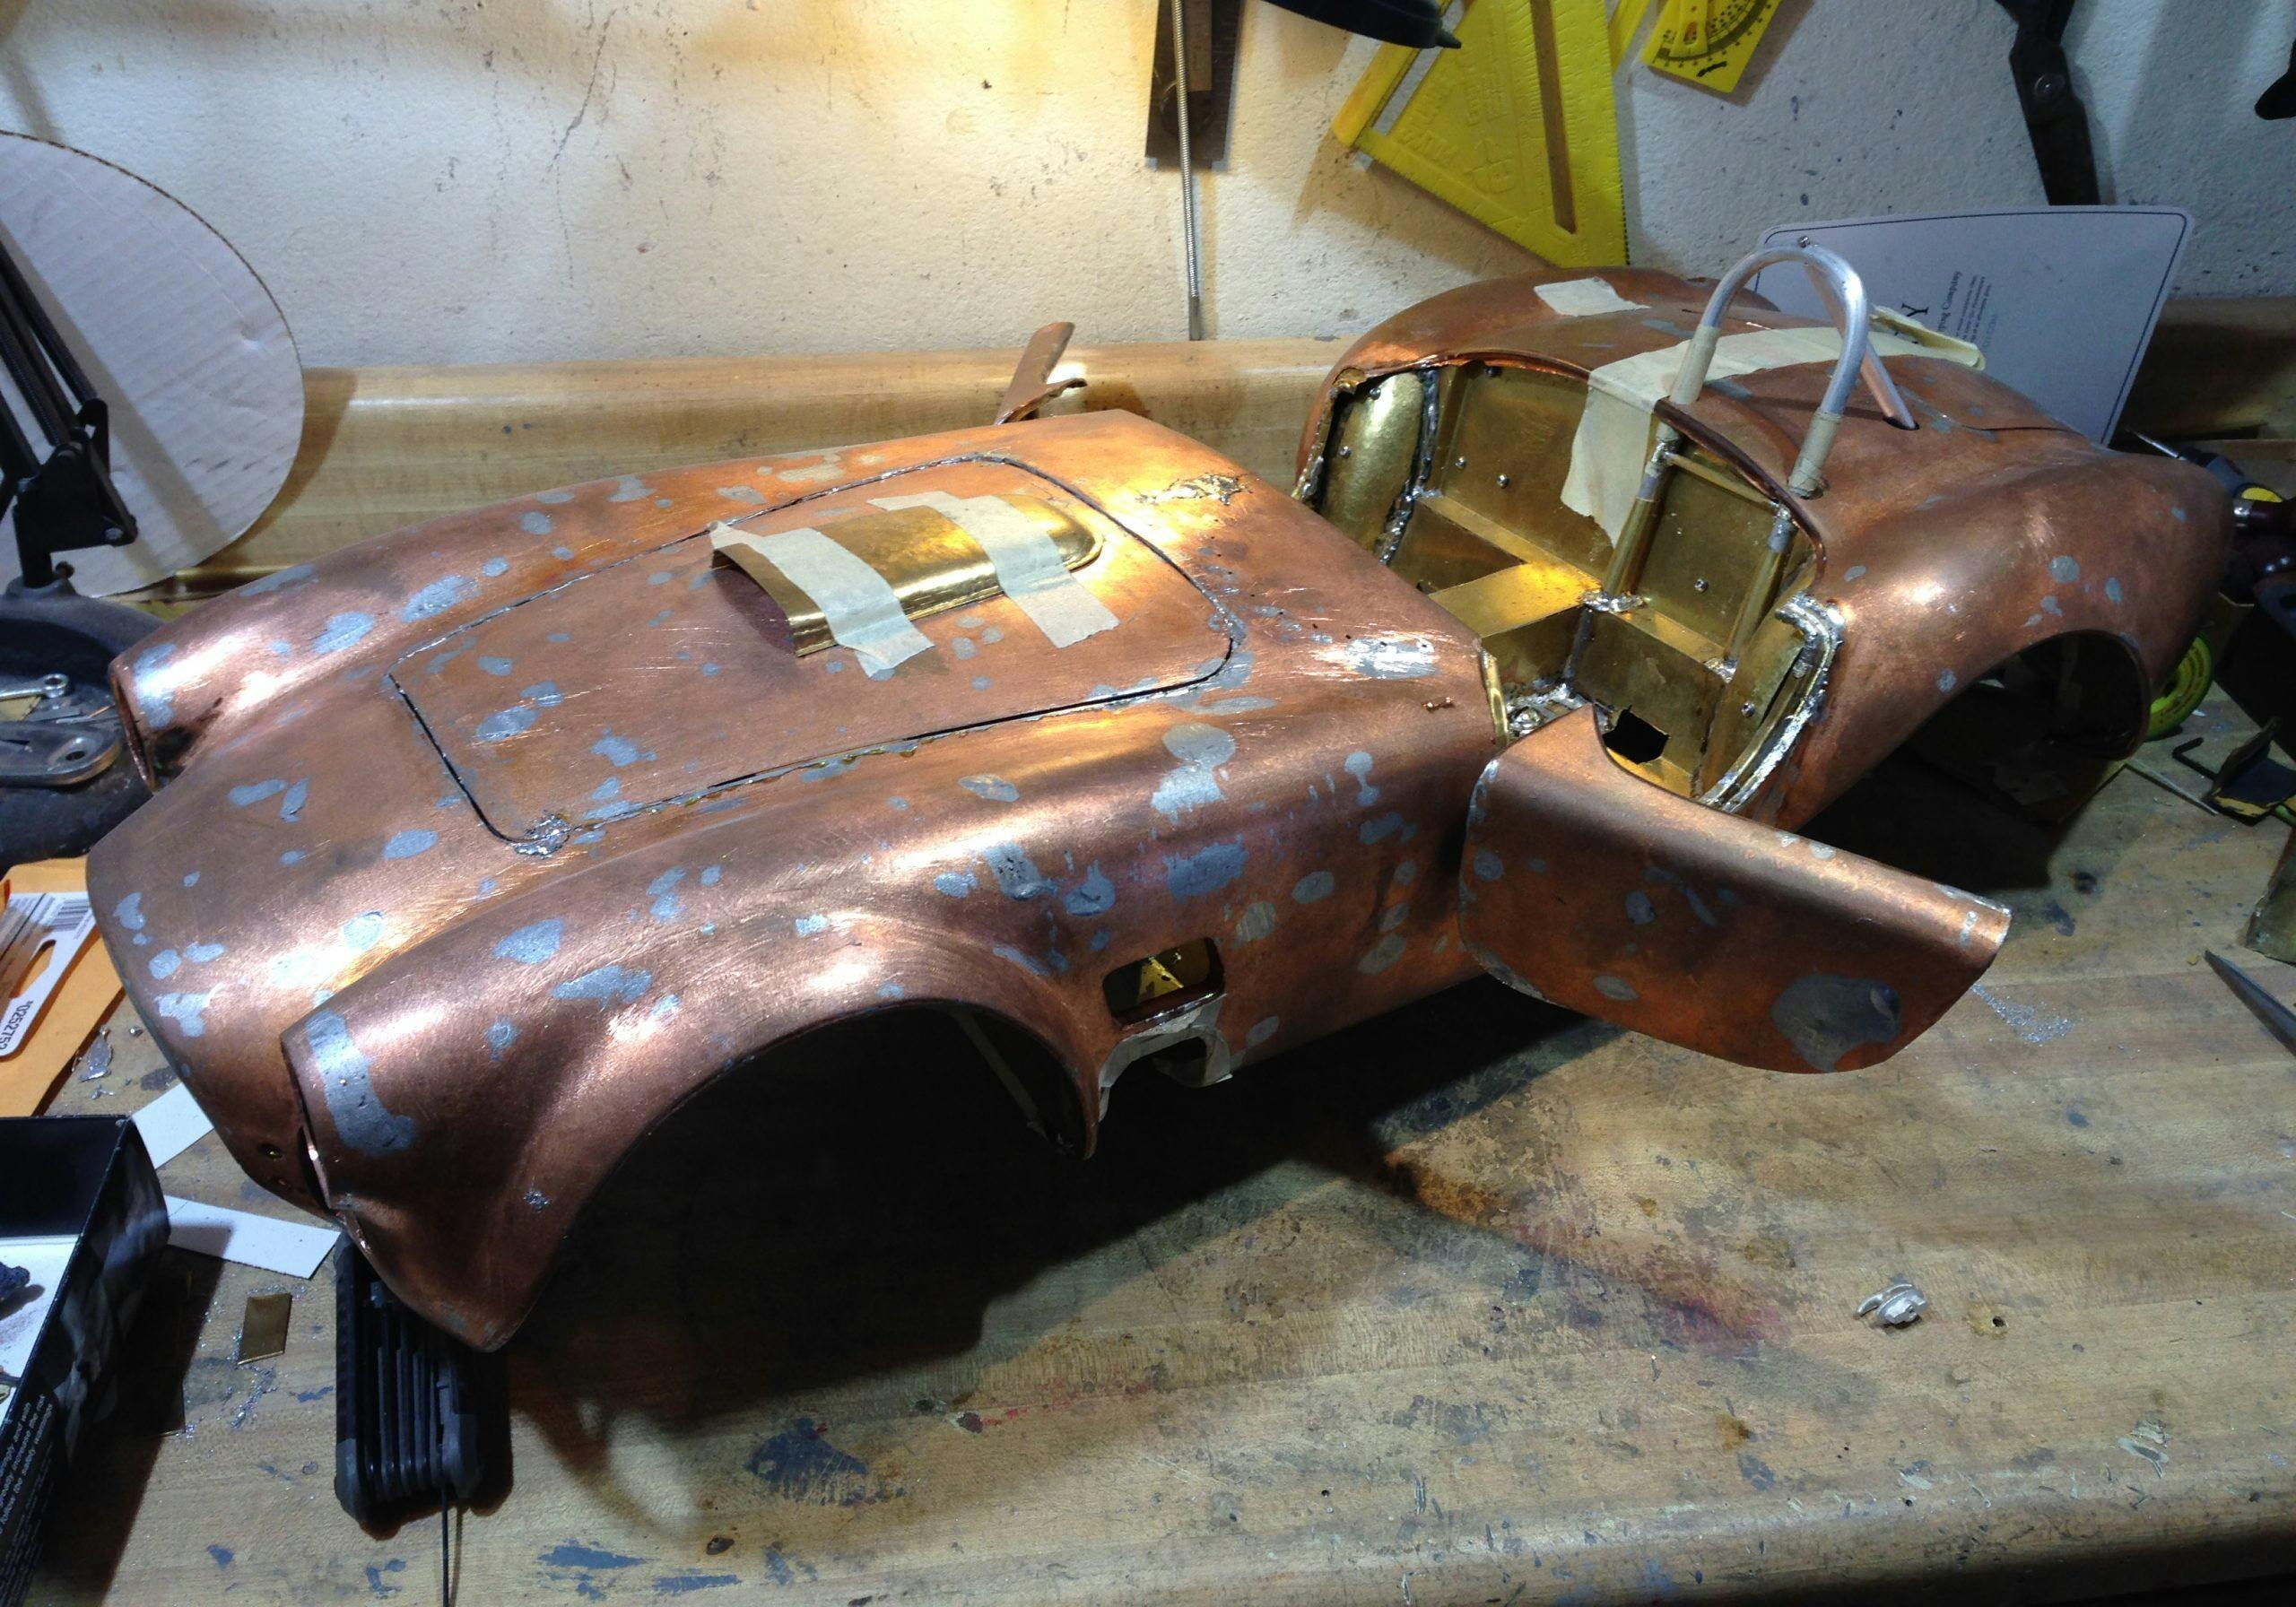 Essex Cobra scale model copper body